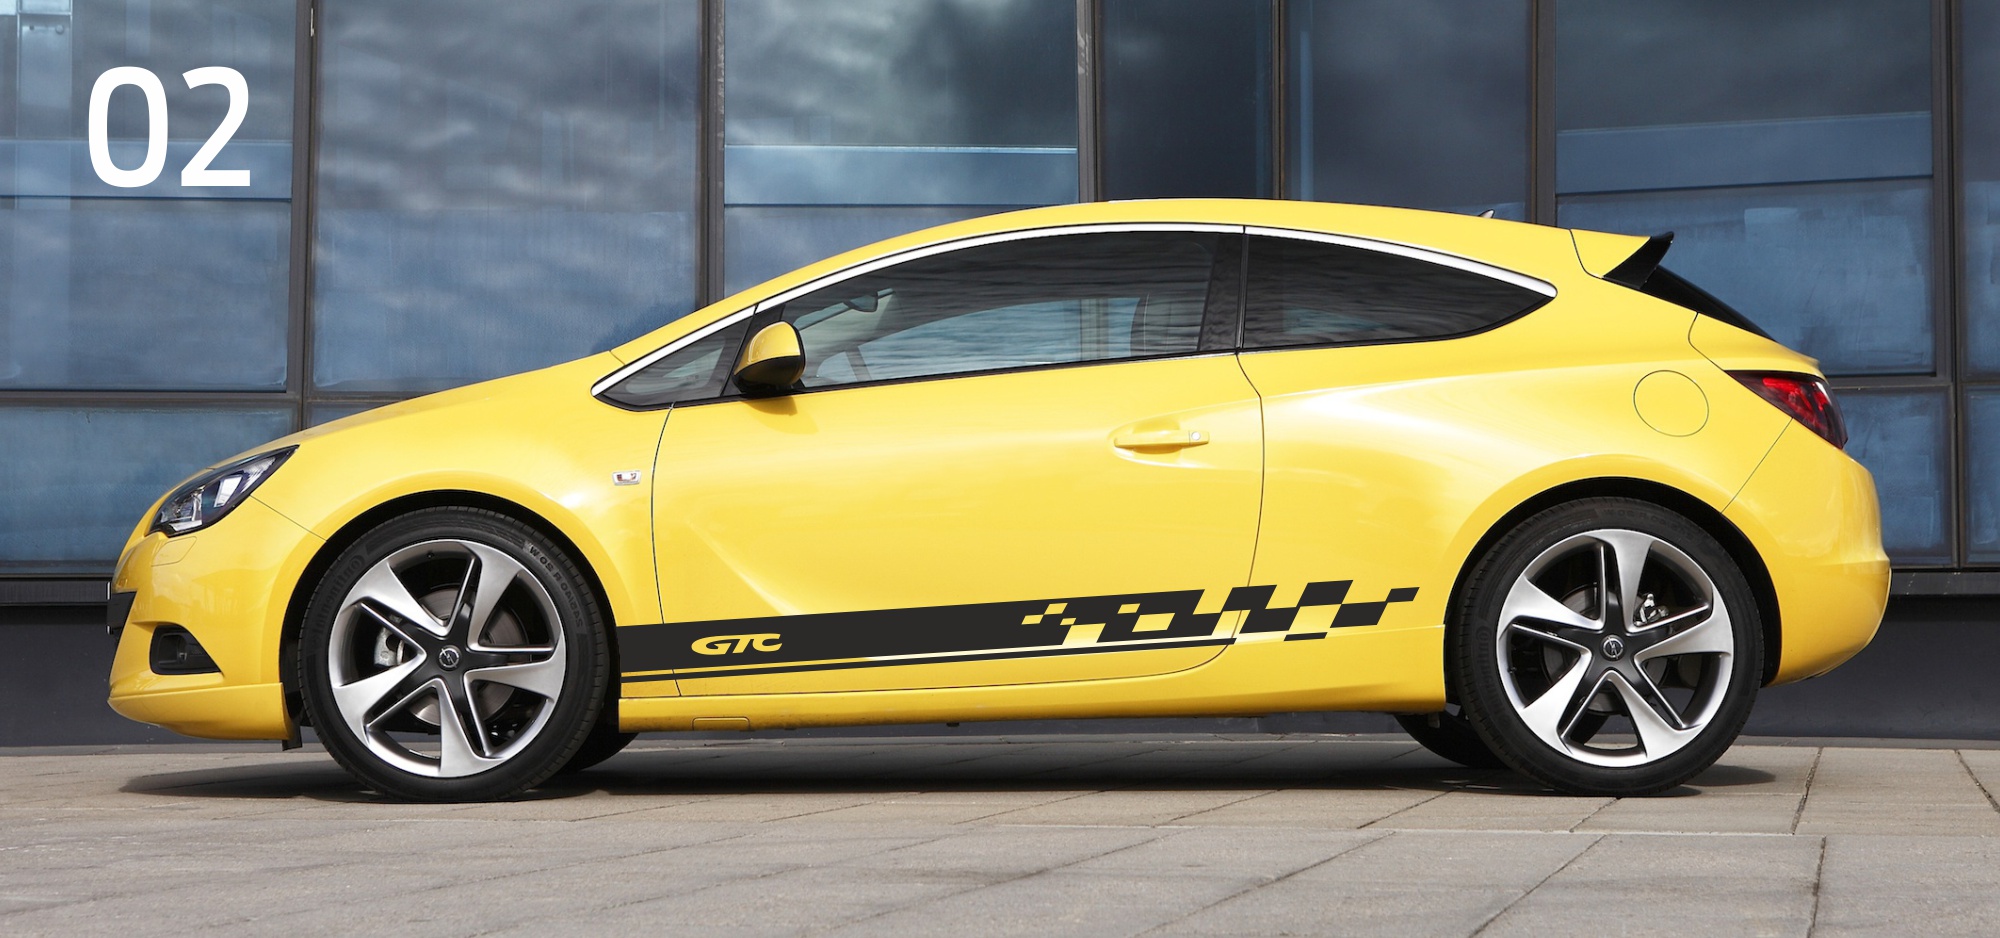 Naklejki Opel Astra Insignia OPC Irmscher Sticker Decals Aufkleber GTC